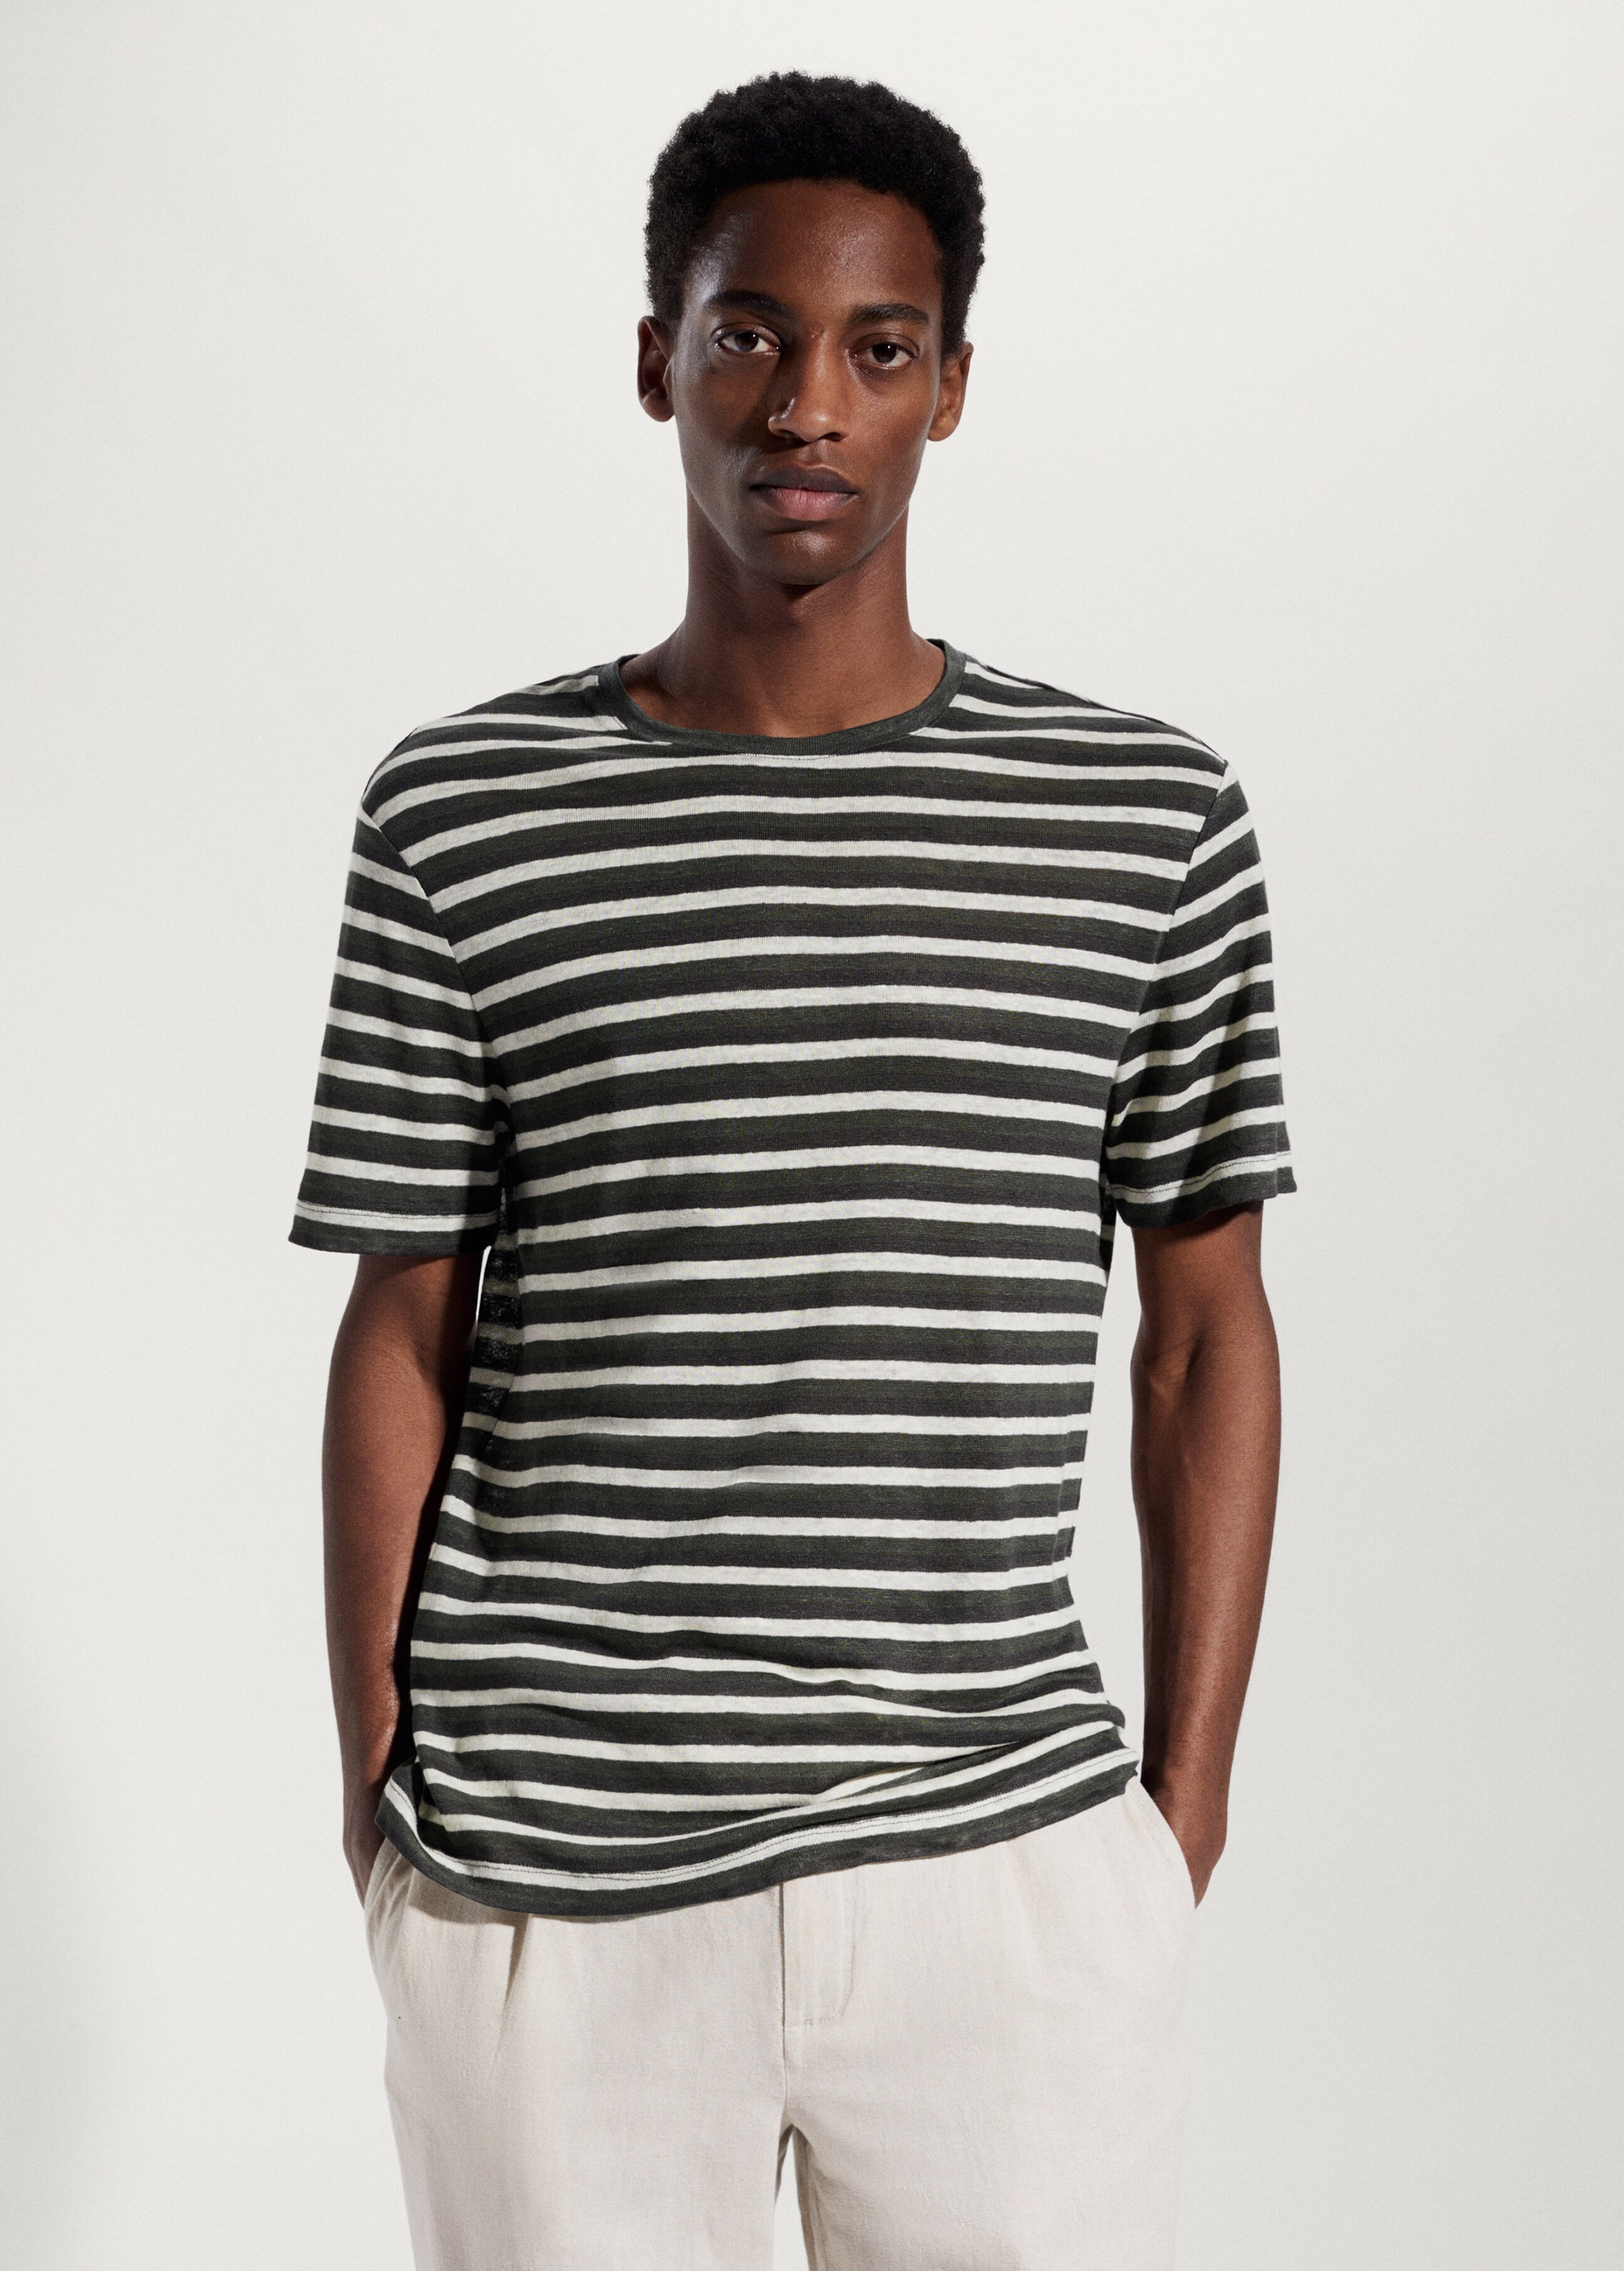 100% linen striped t-shirt - Medium plane